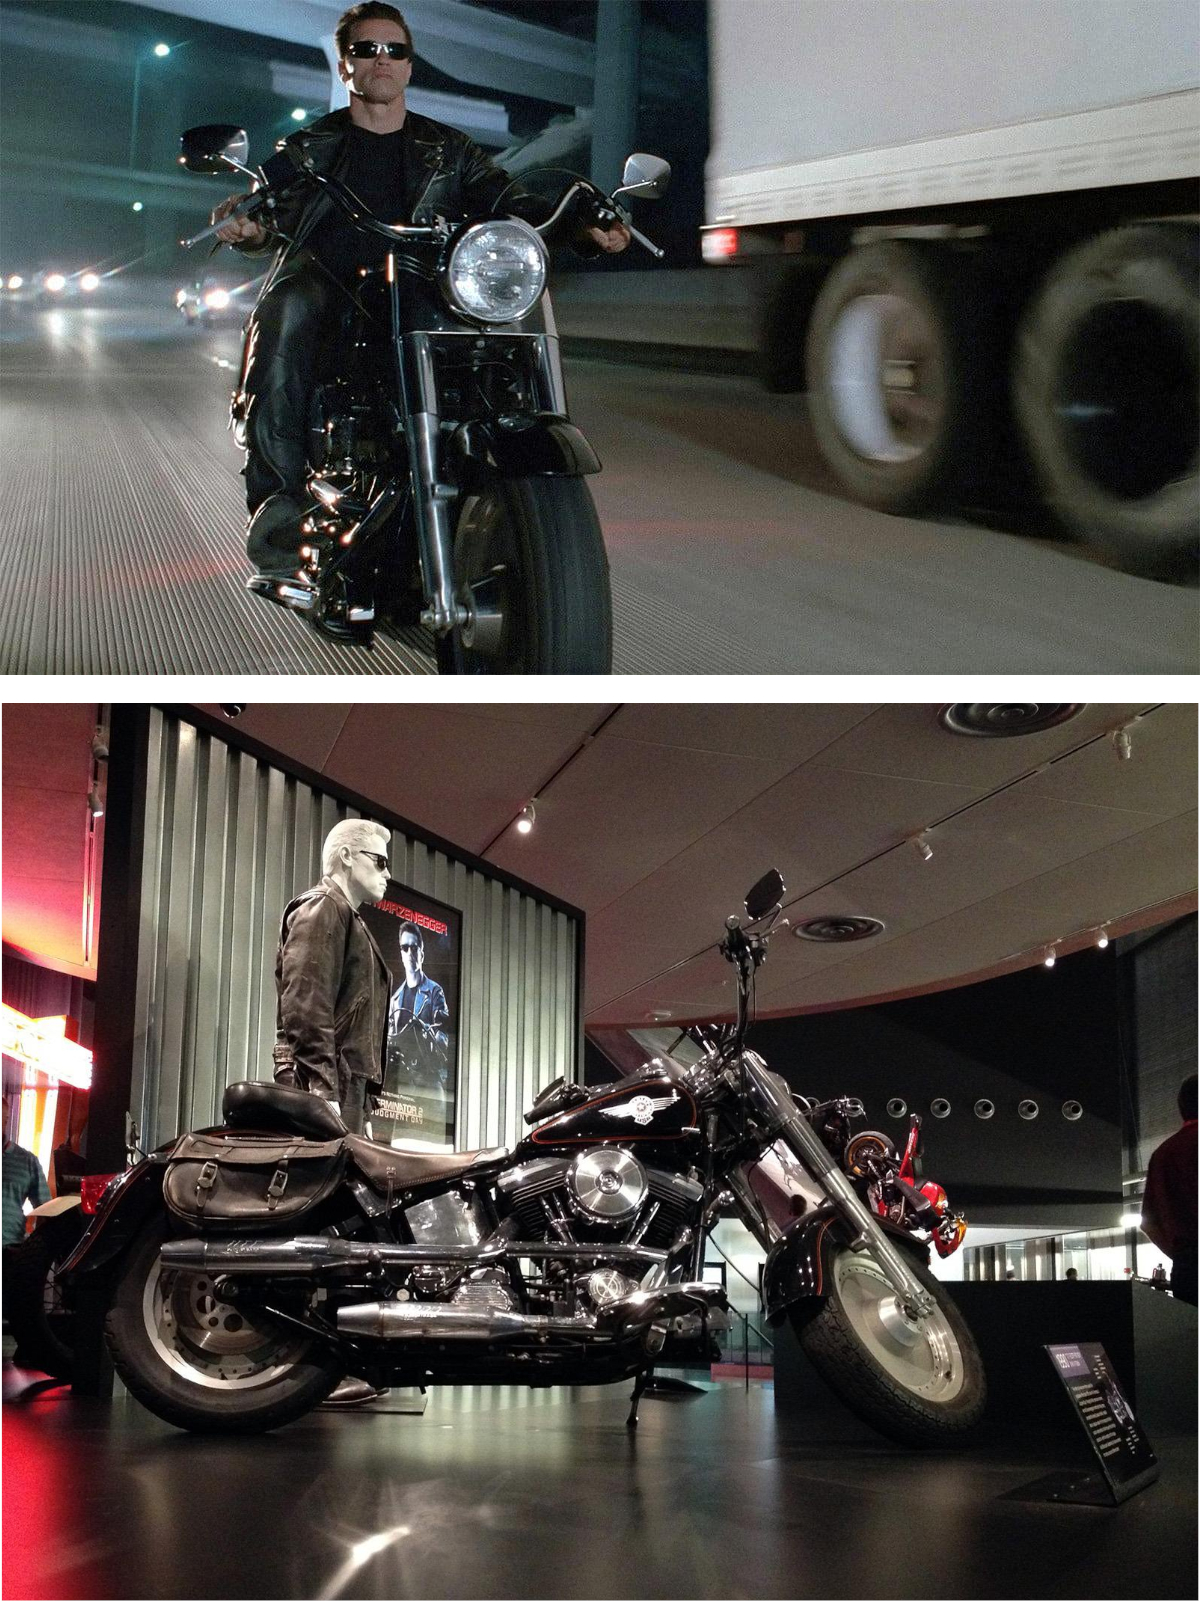 Весной 2018 Harley-Davidson Fat Boy из фильма «Терминатор 2» был выставлен на торги в аукционном доме Profiles in History, покупатель заплатил за байк Терминатора (вдумайтесь!) $480k зеленых шуршунчиков.